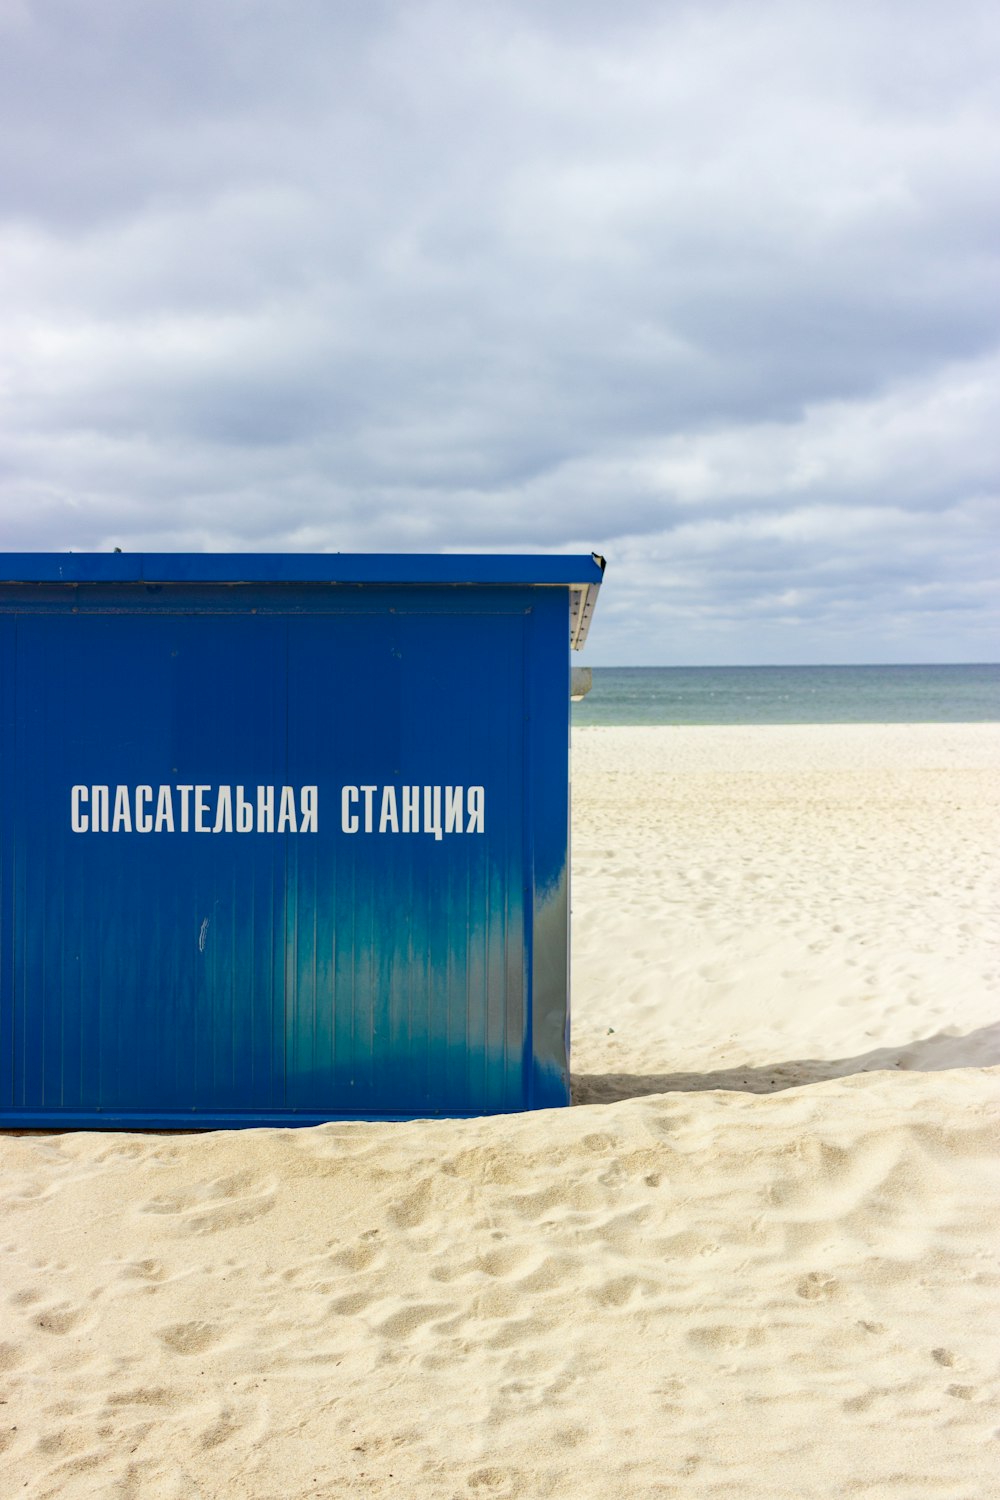 Eine blaue Box auf einem Sandstrand